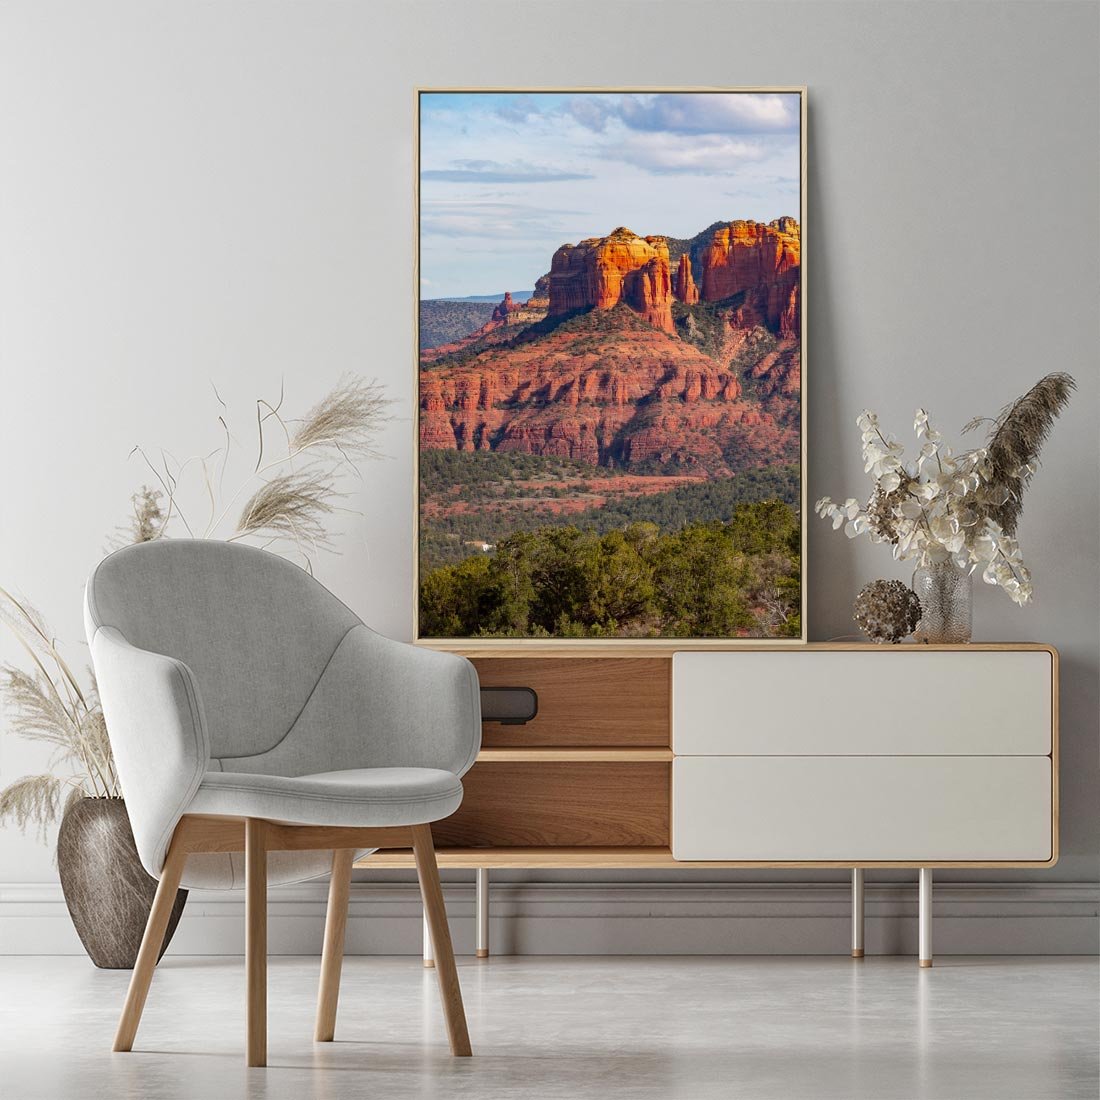 Obraz w ramie 50x70 - Majestatyczny Wielki Kanion - wielki kanion, perspektywa - rama drewno